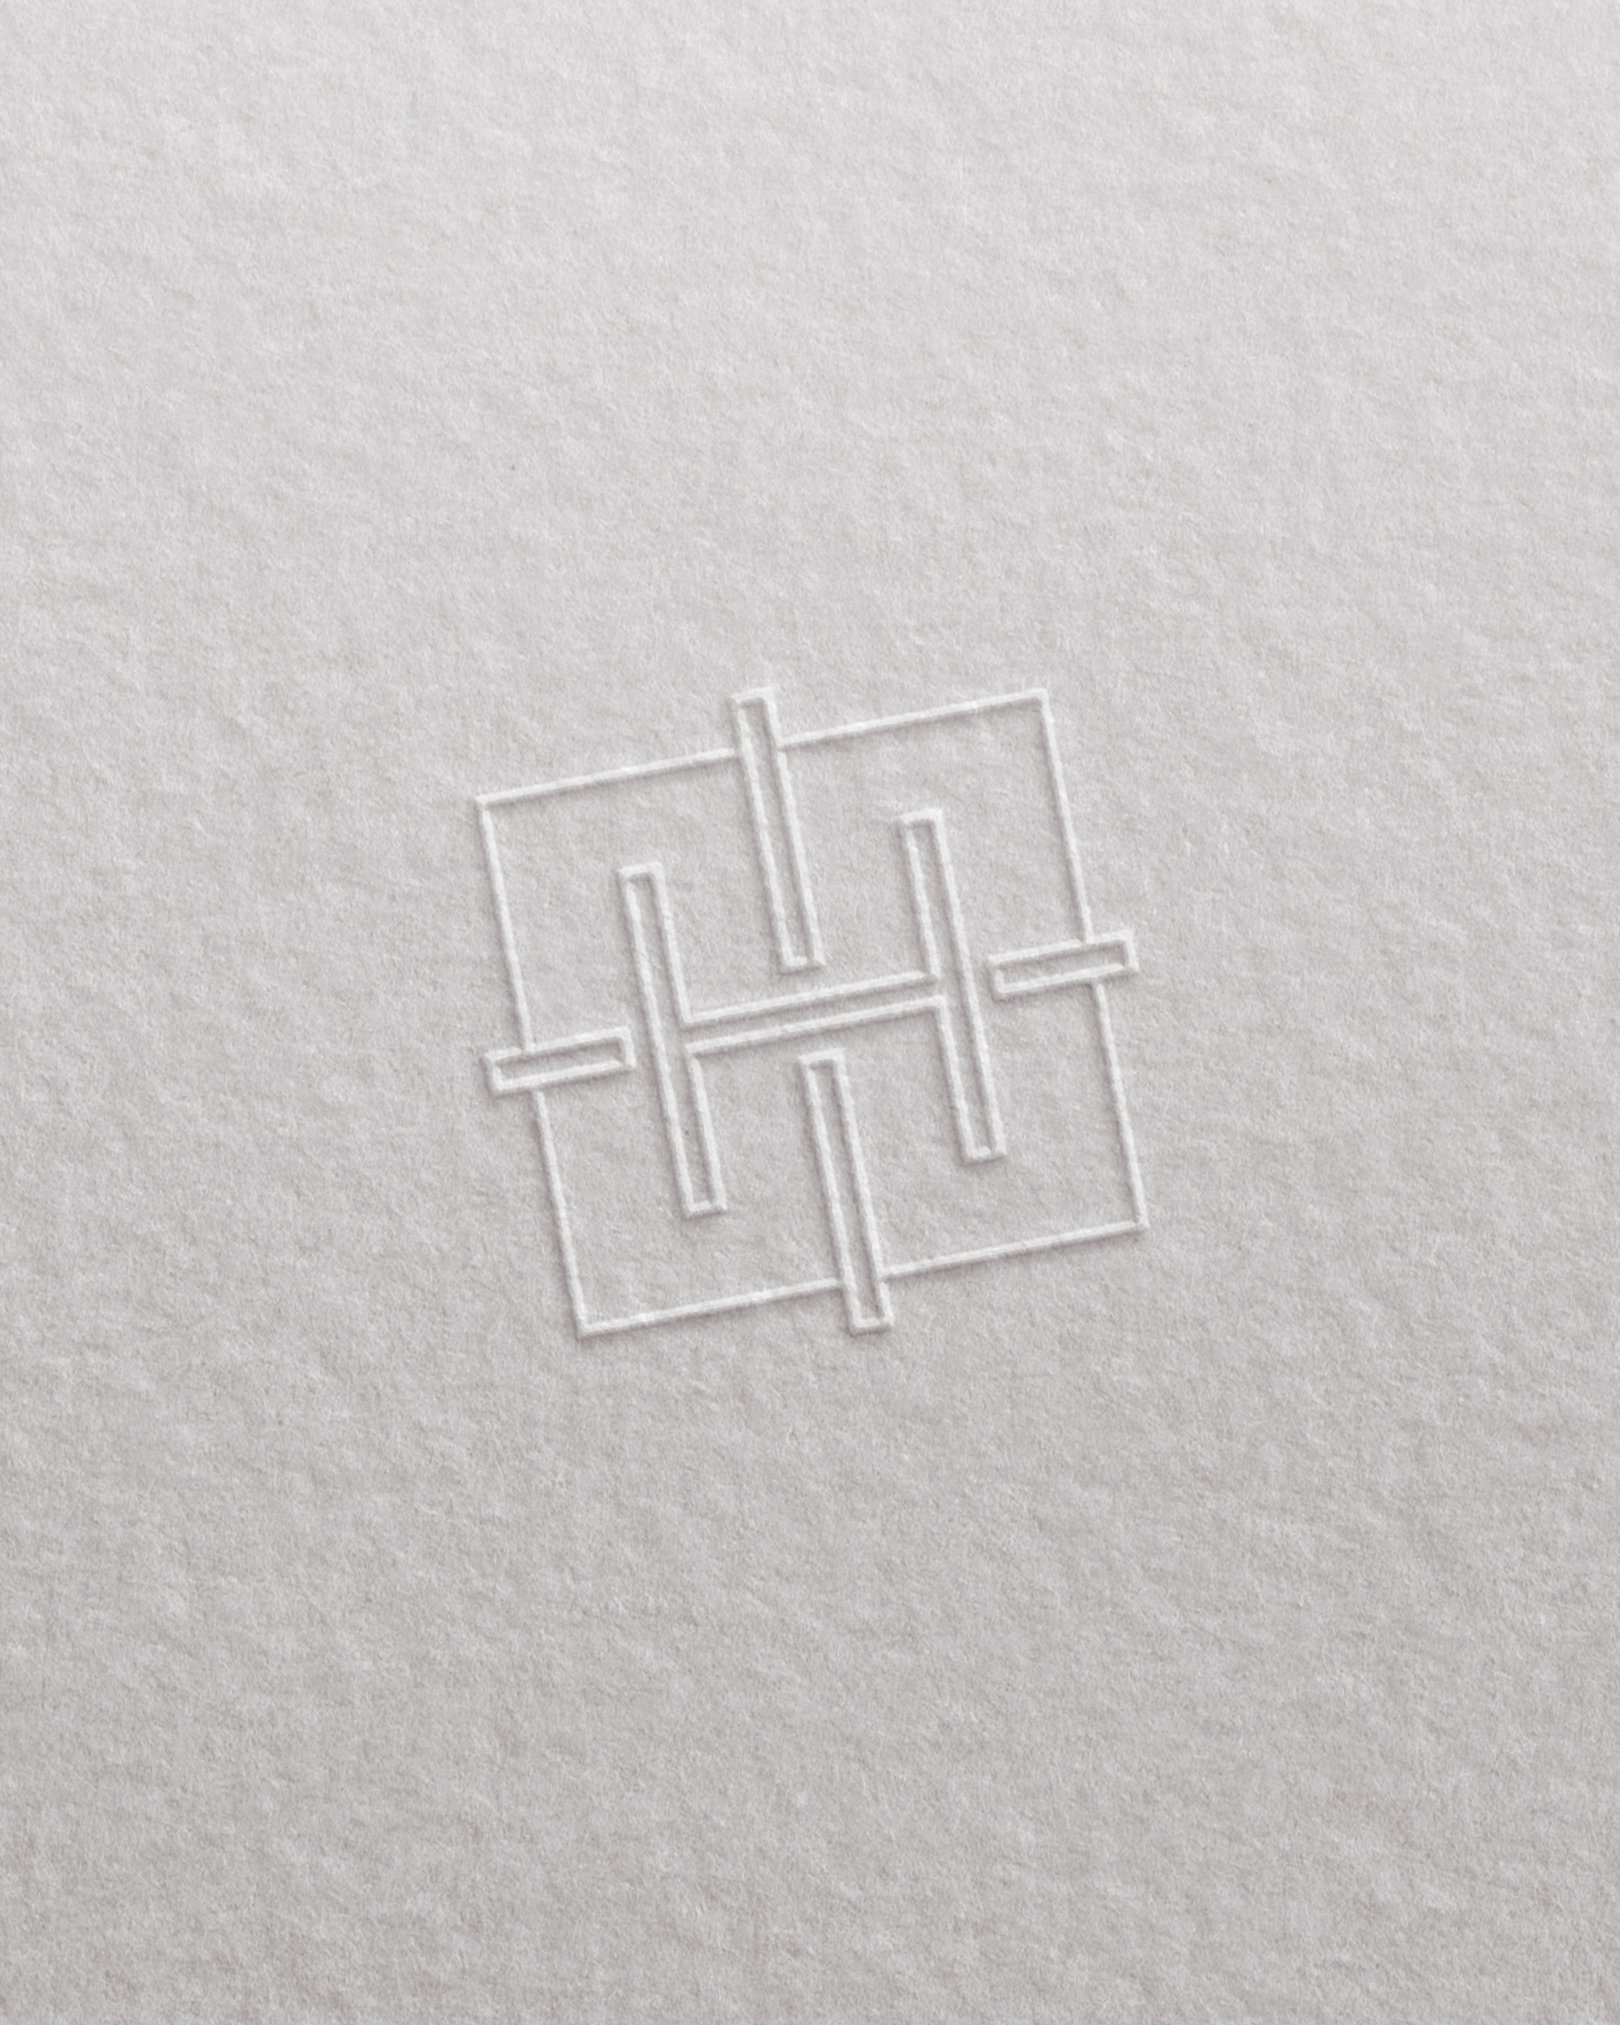 Henry Tieu Logo Mark.jpg